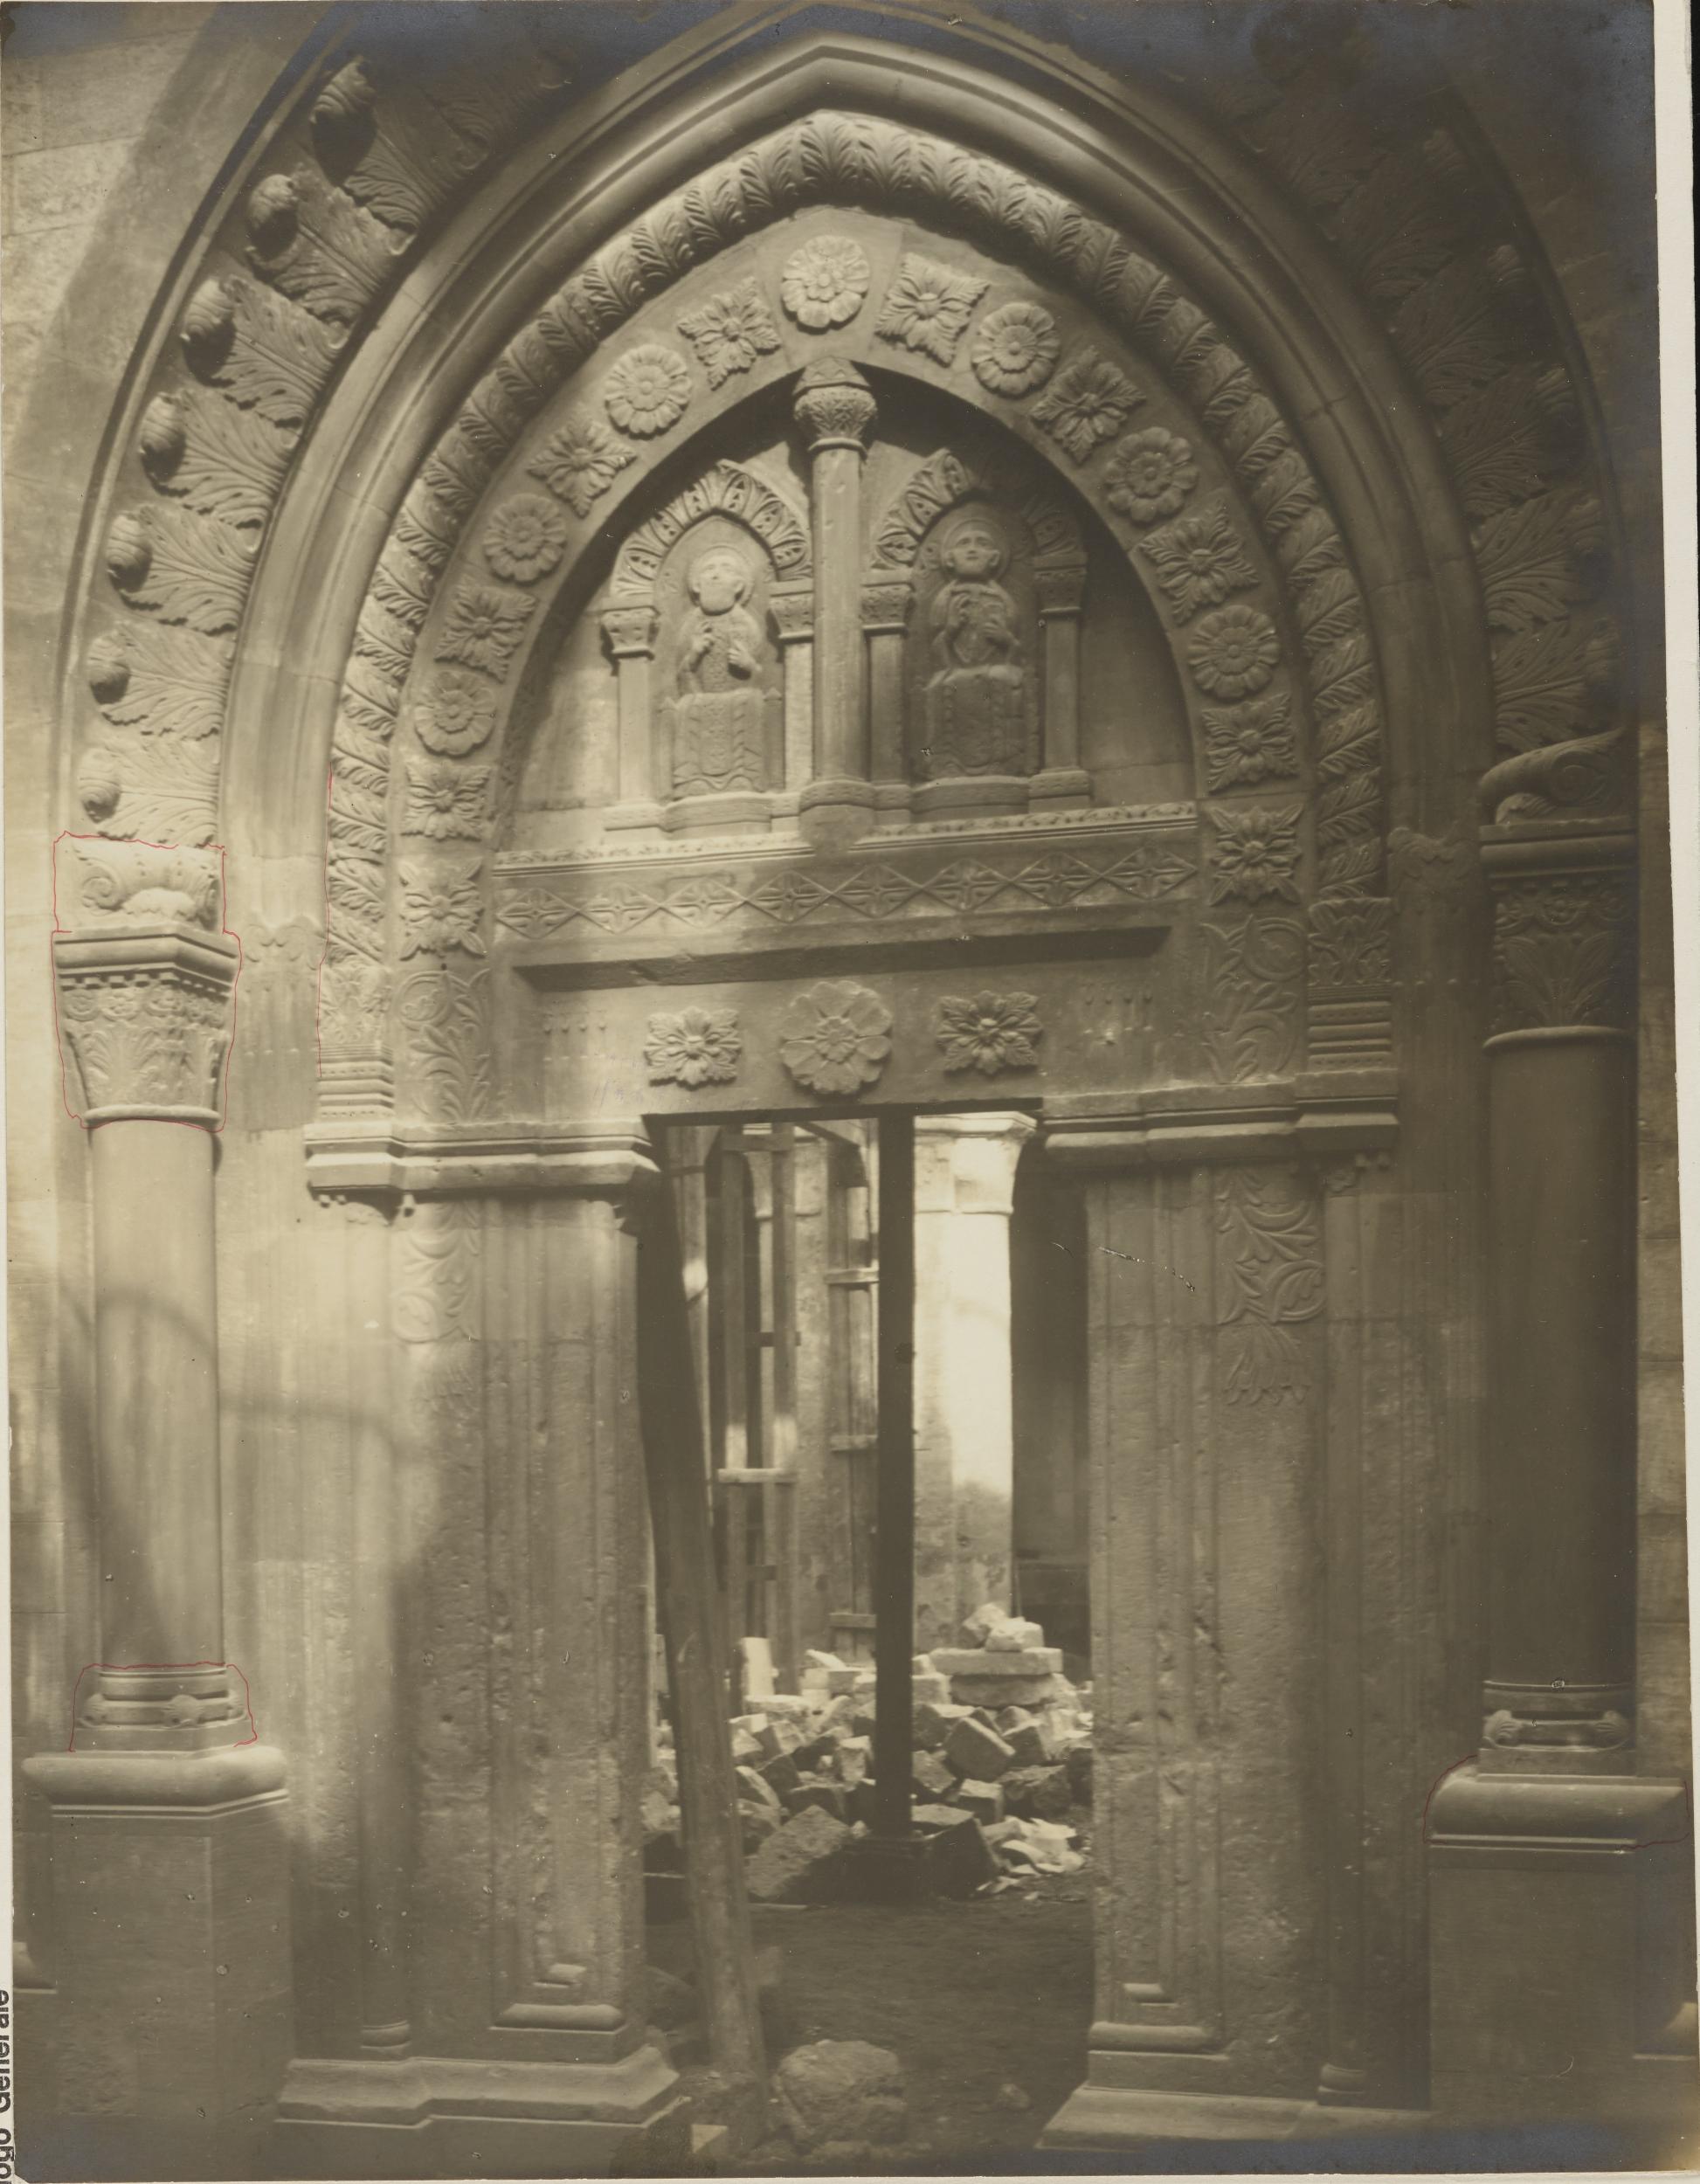 Fotografo non identificato, Conversano - Cattedrale, portale laterale, 1901-1925, gelatina ai sali d'argento/carta, MPI155324